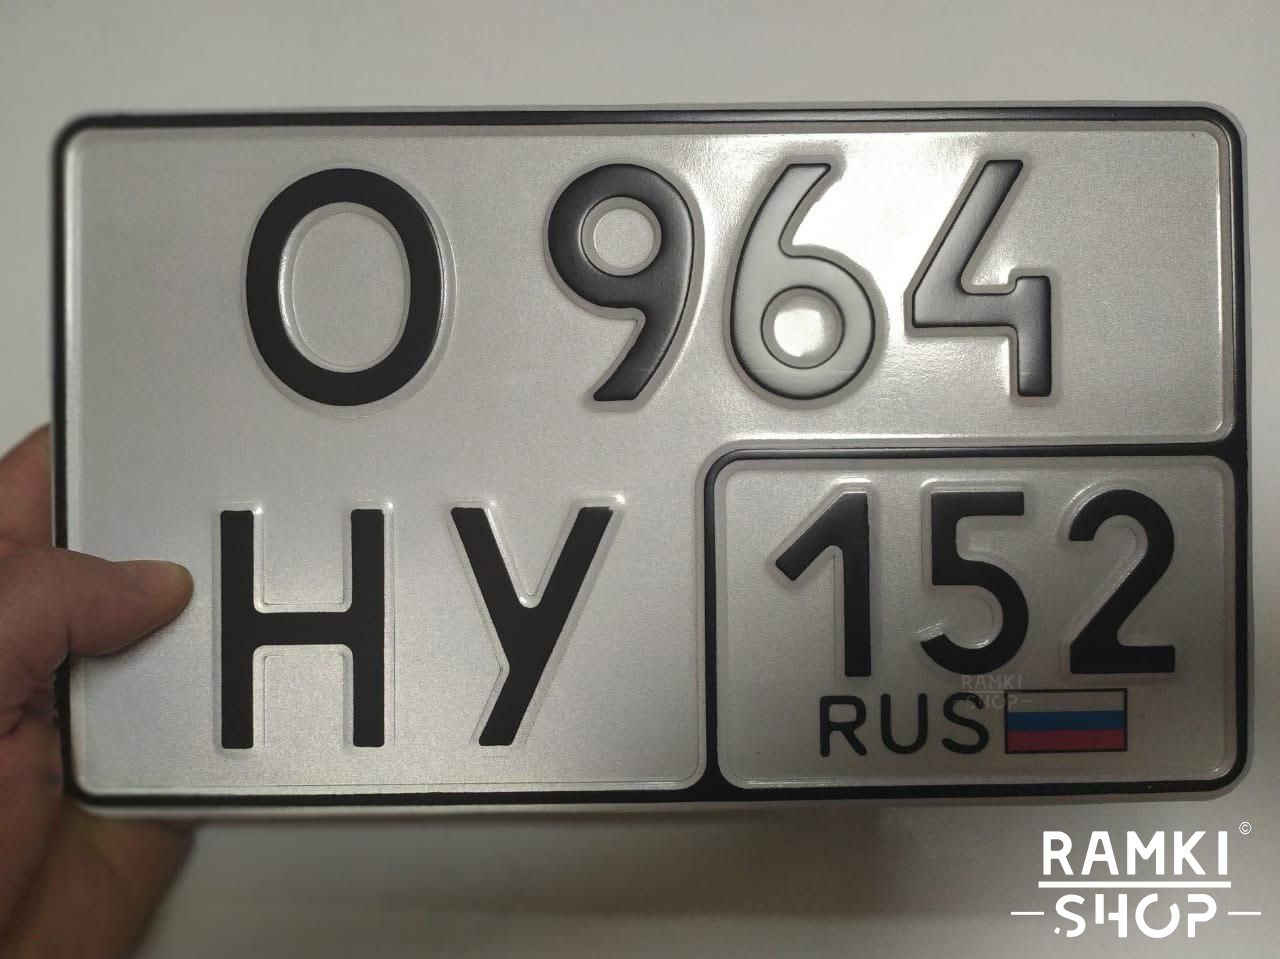 Коды гос номеров автомобилей. Номера автомобильные а666уф. Номерной знак Тип 1а Москва. Квадратный номерной знак. Квадратный номер на авто.